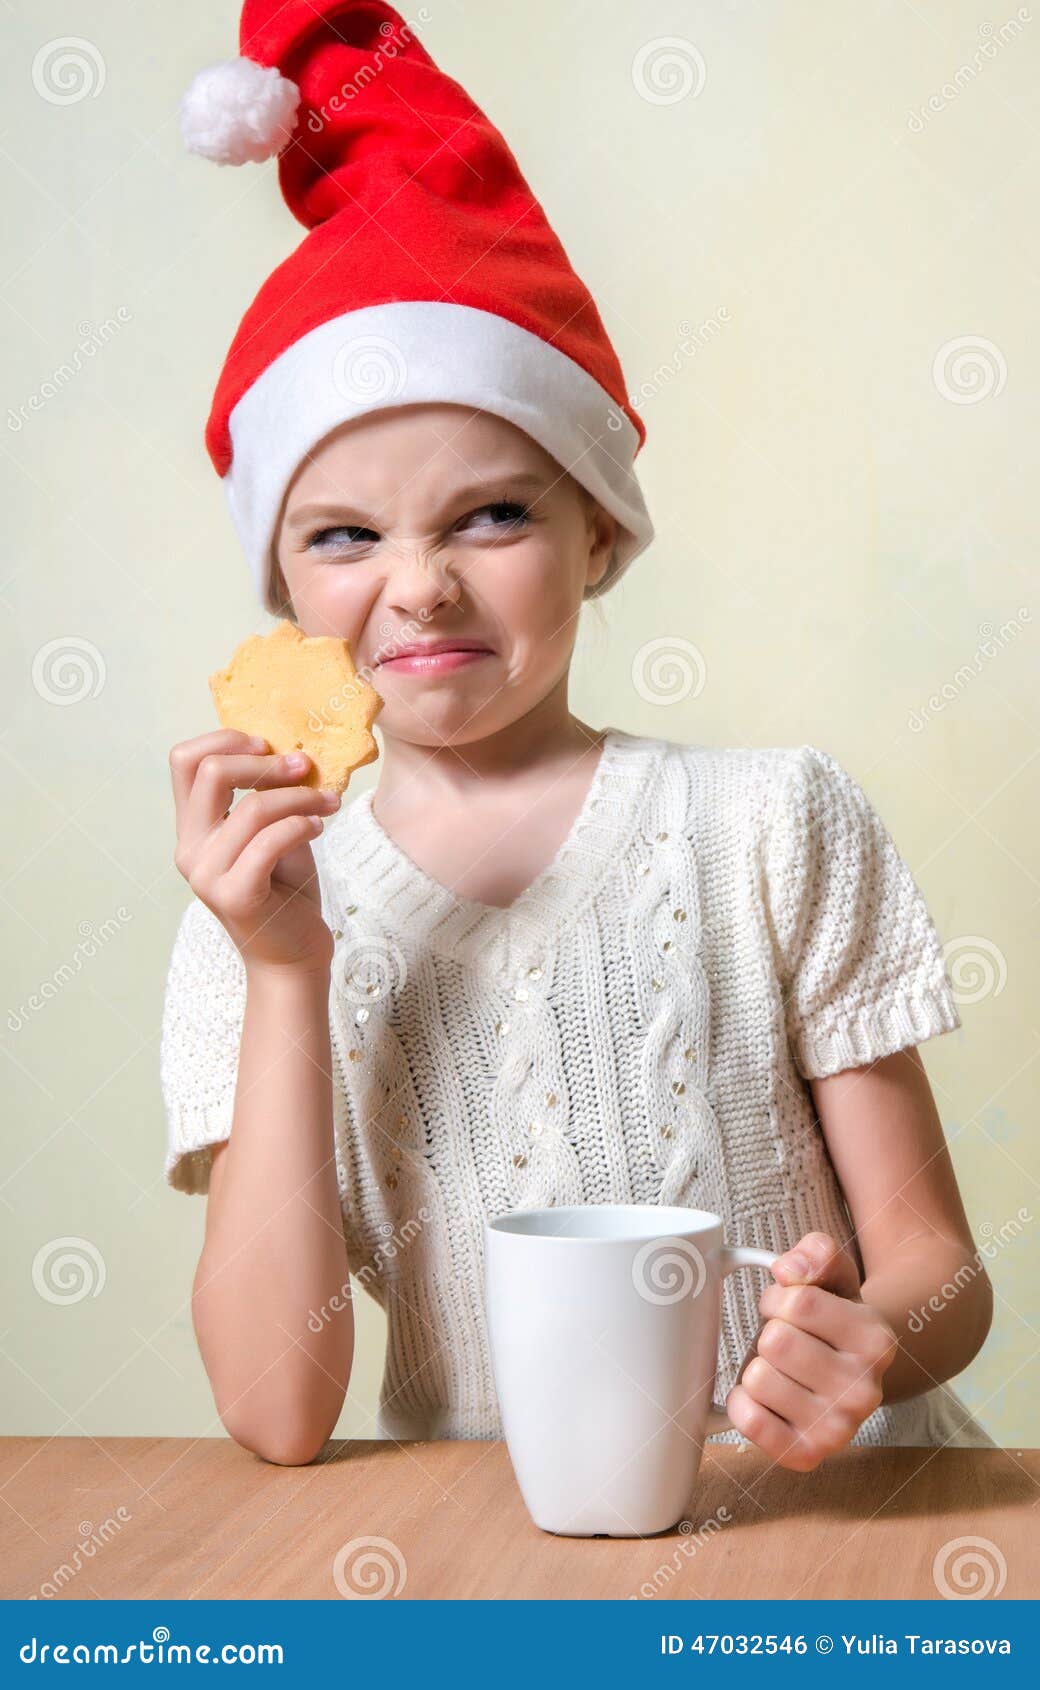 ÃÂ¡ute girl in santa claus hat eat cookies.